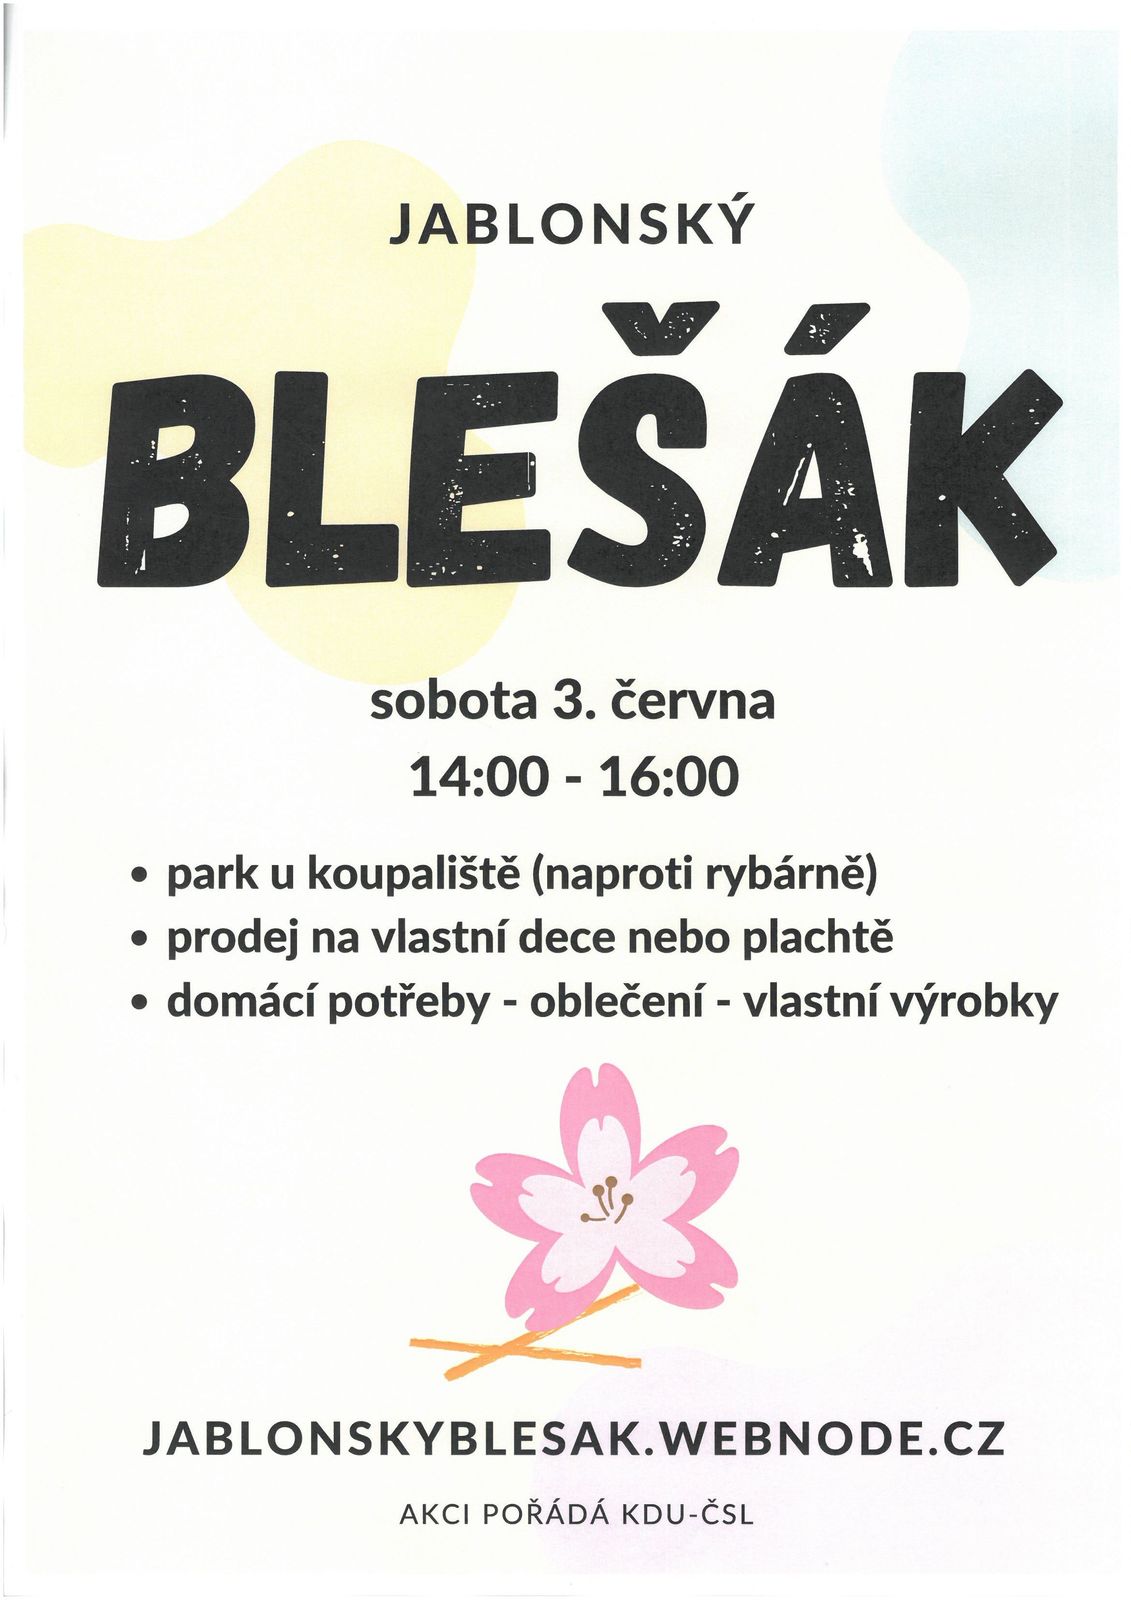 Jablonský blešák (002).jpg